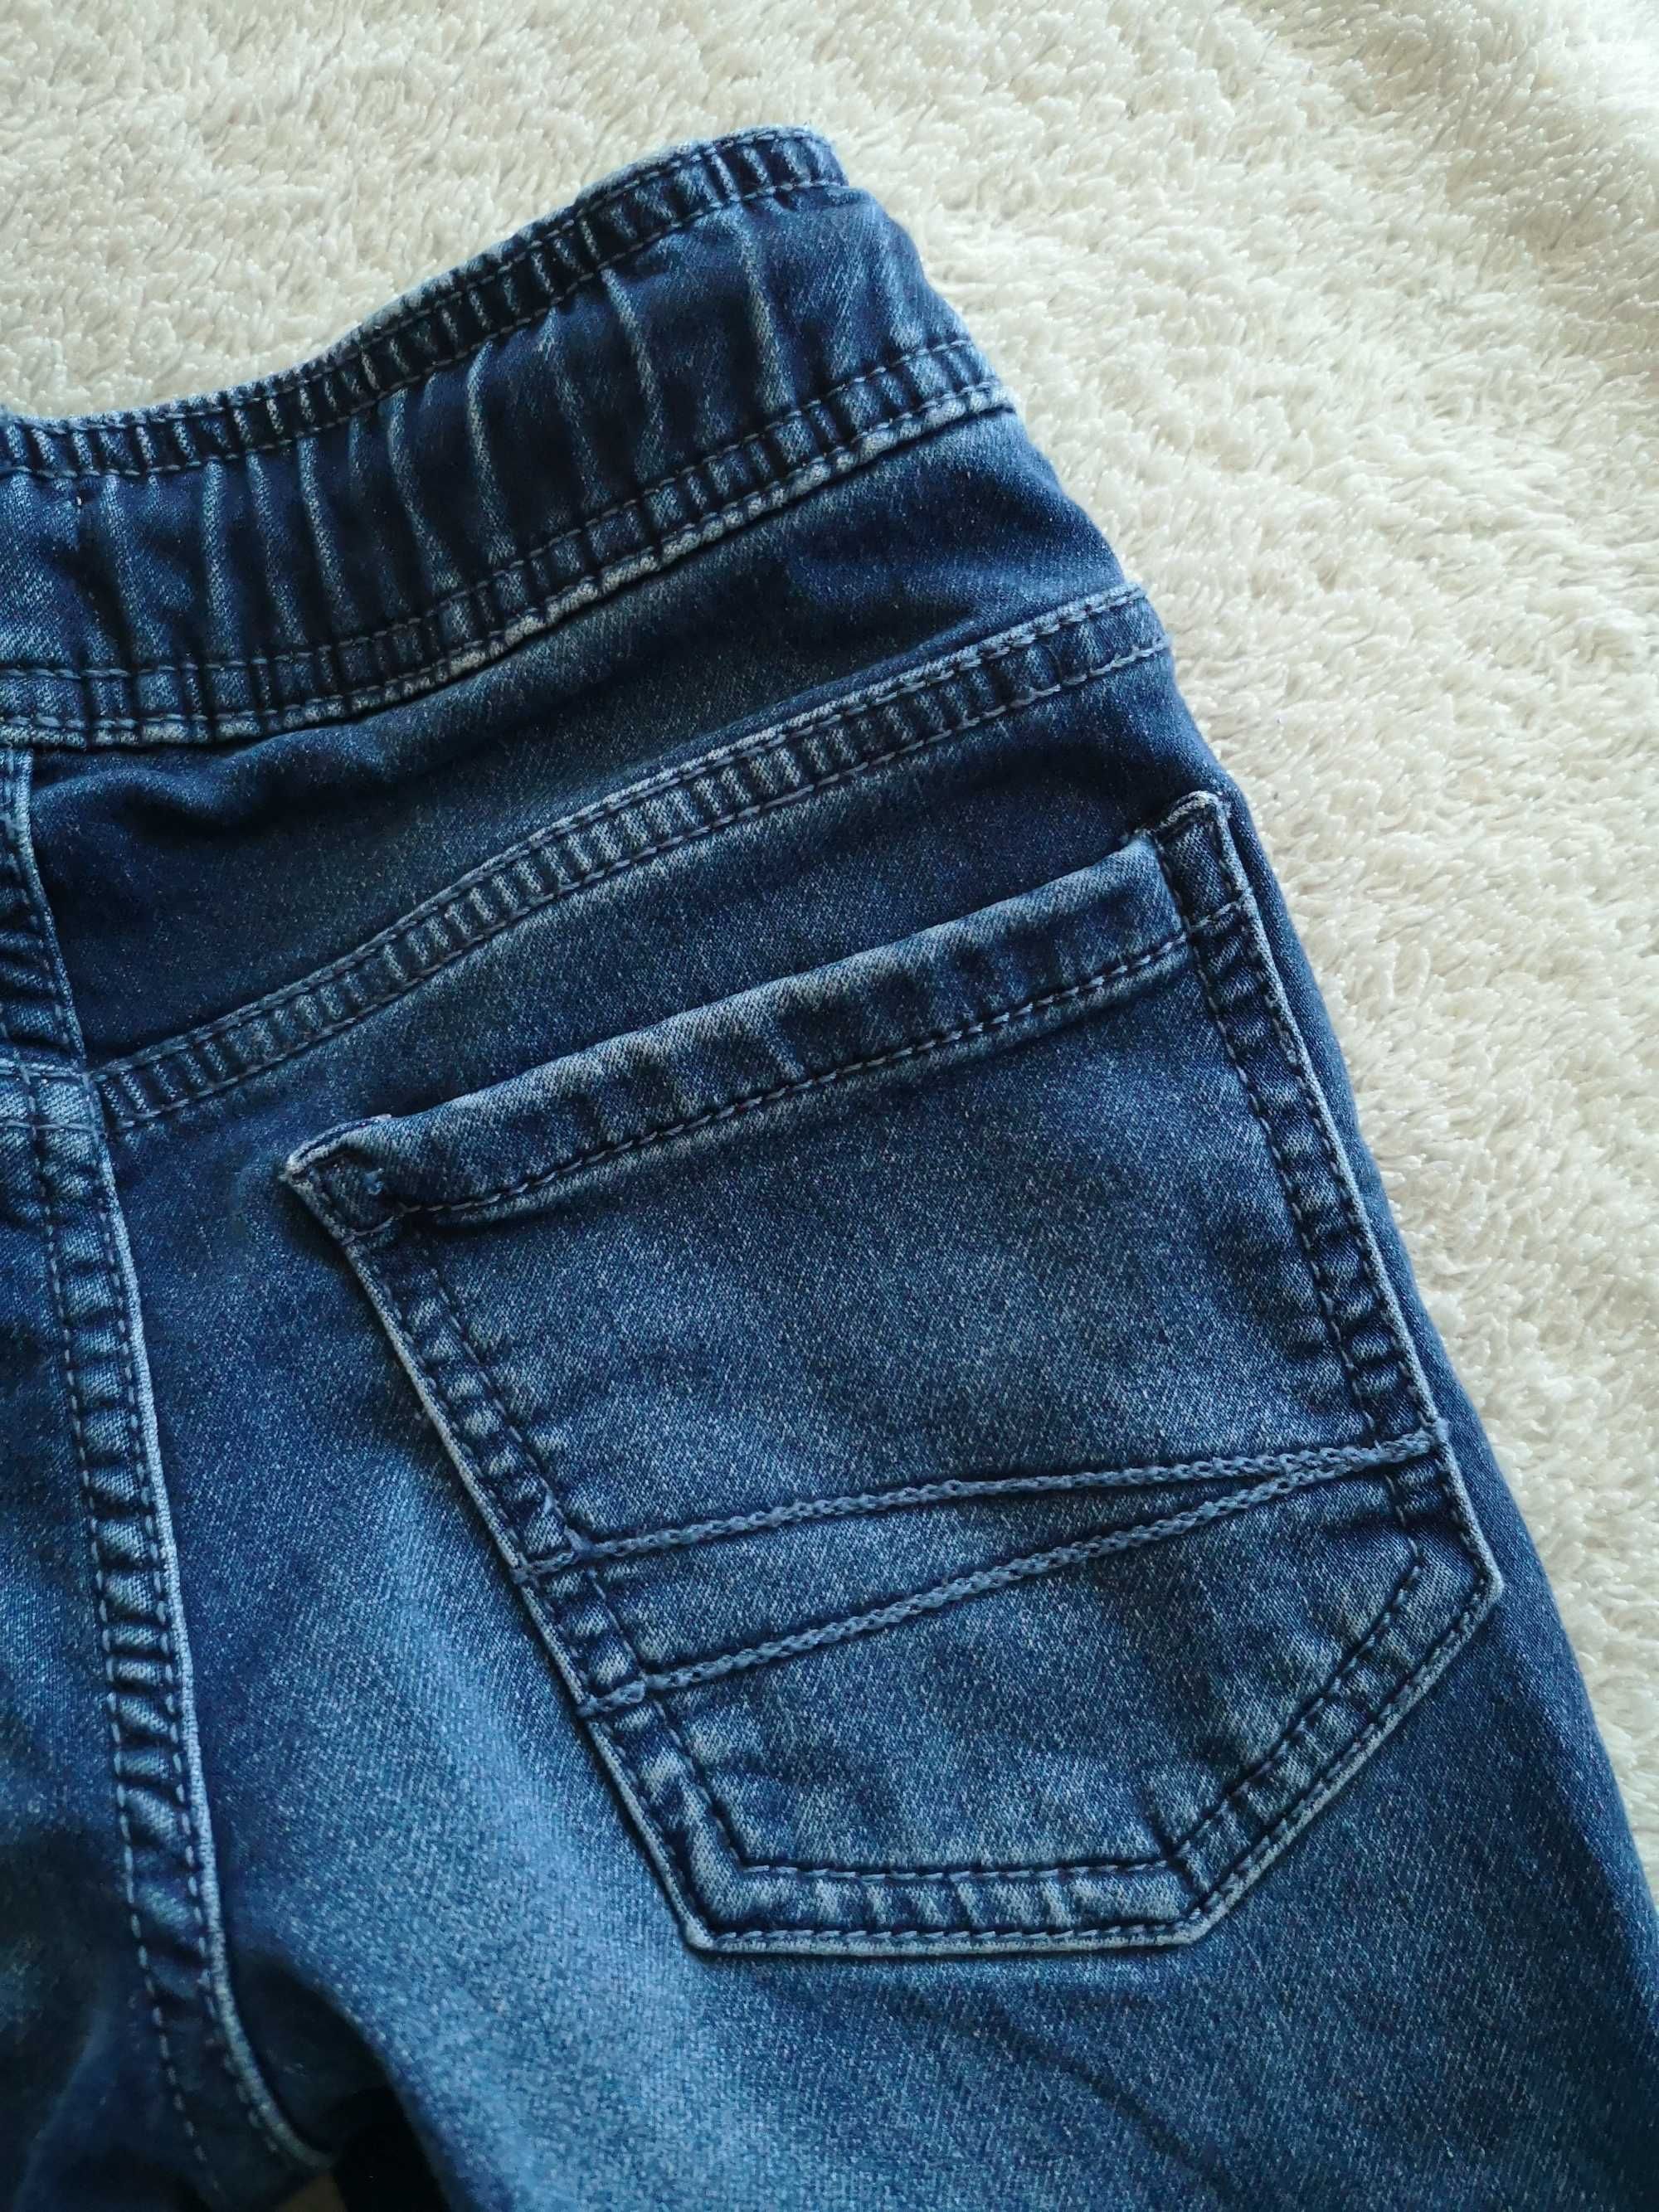 Niebieskie granatowe spodnie jeansowe jeansy na gumie F&F 98 jak nowe